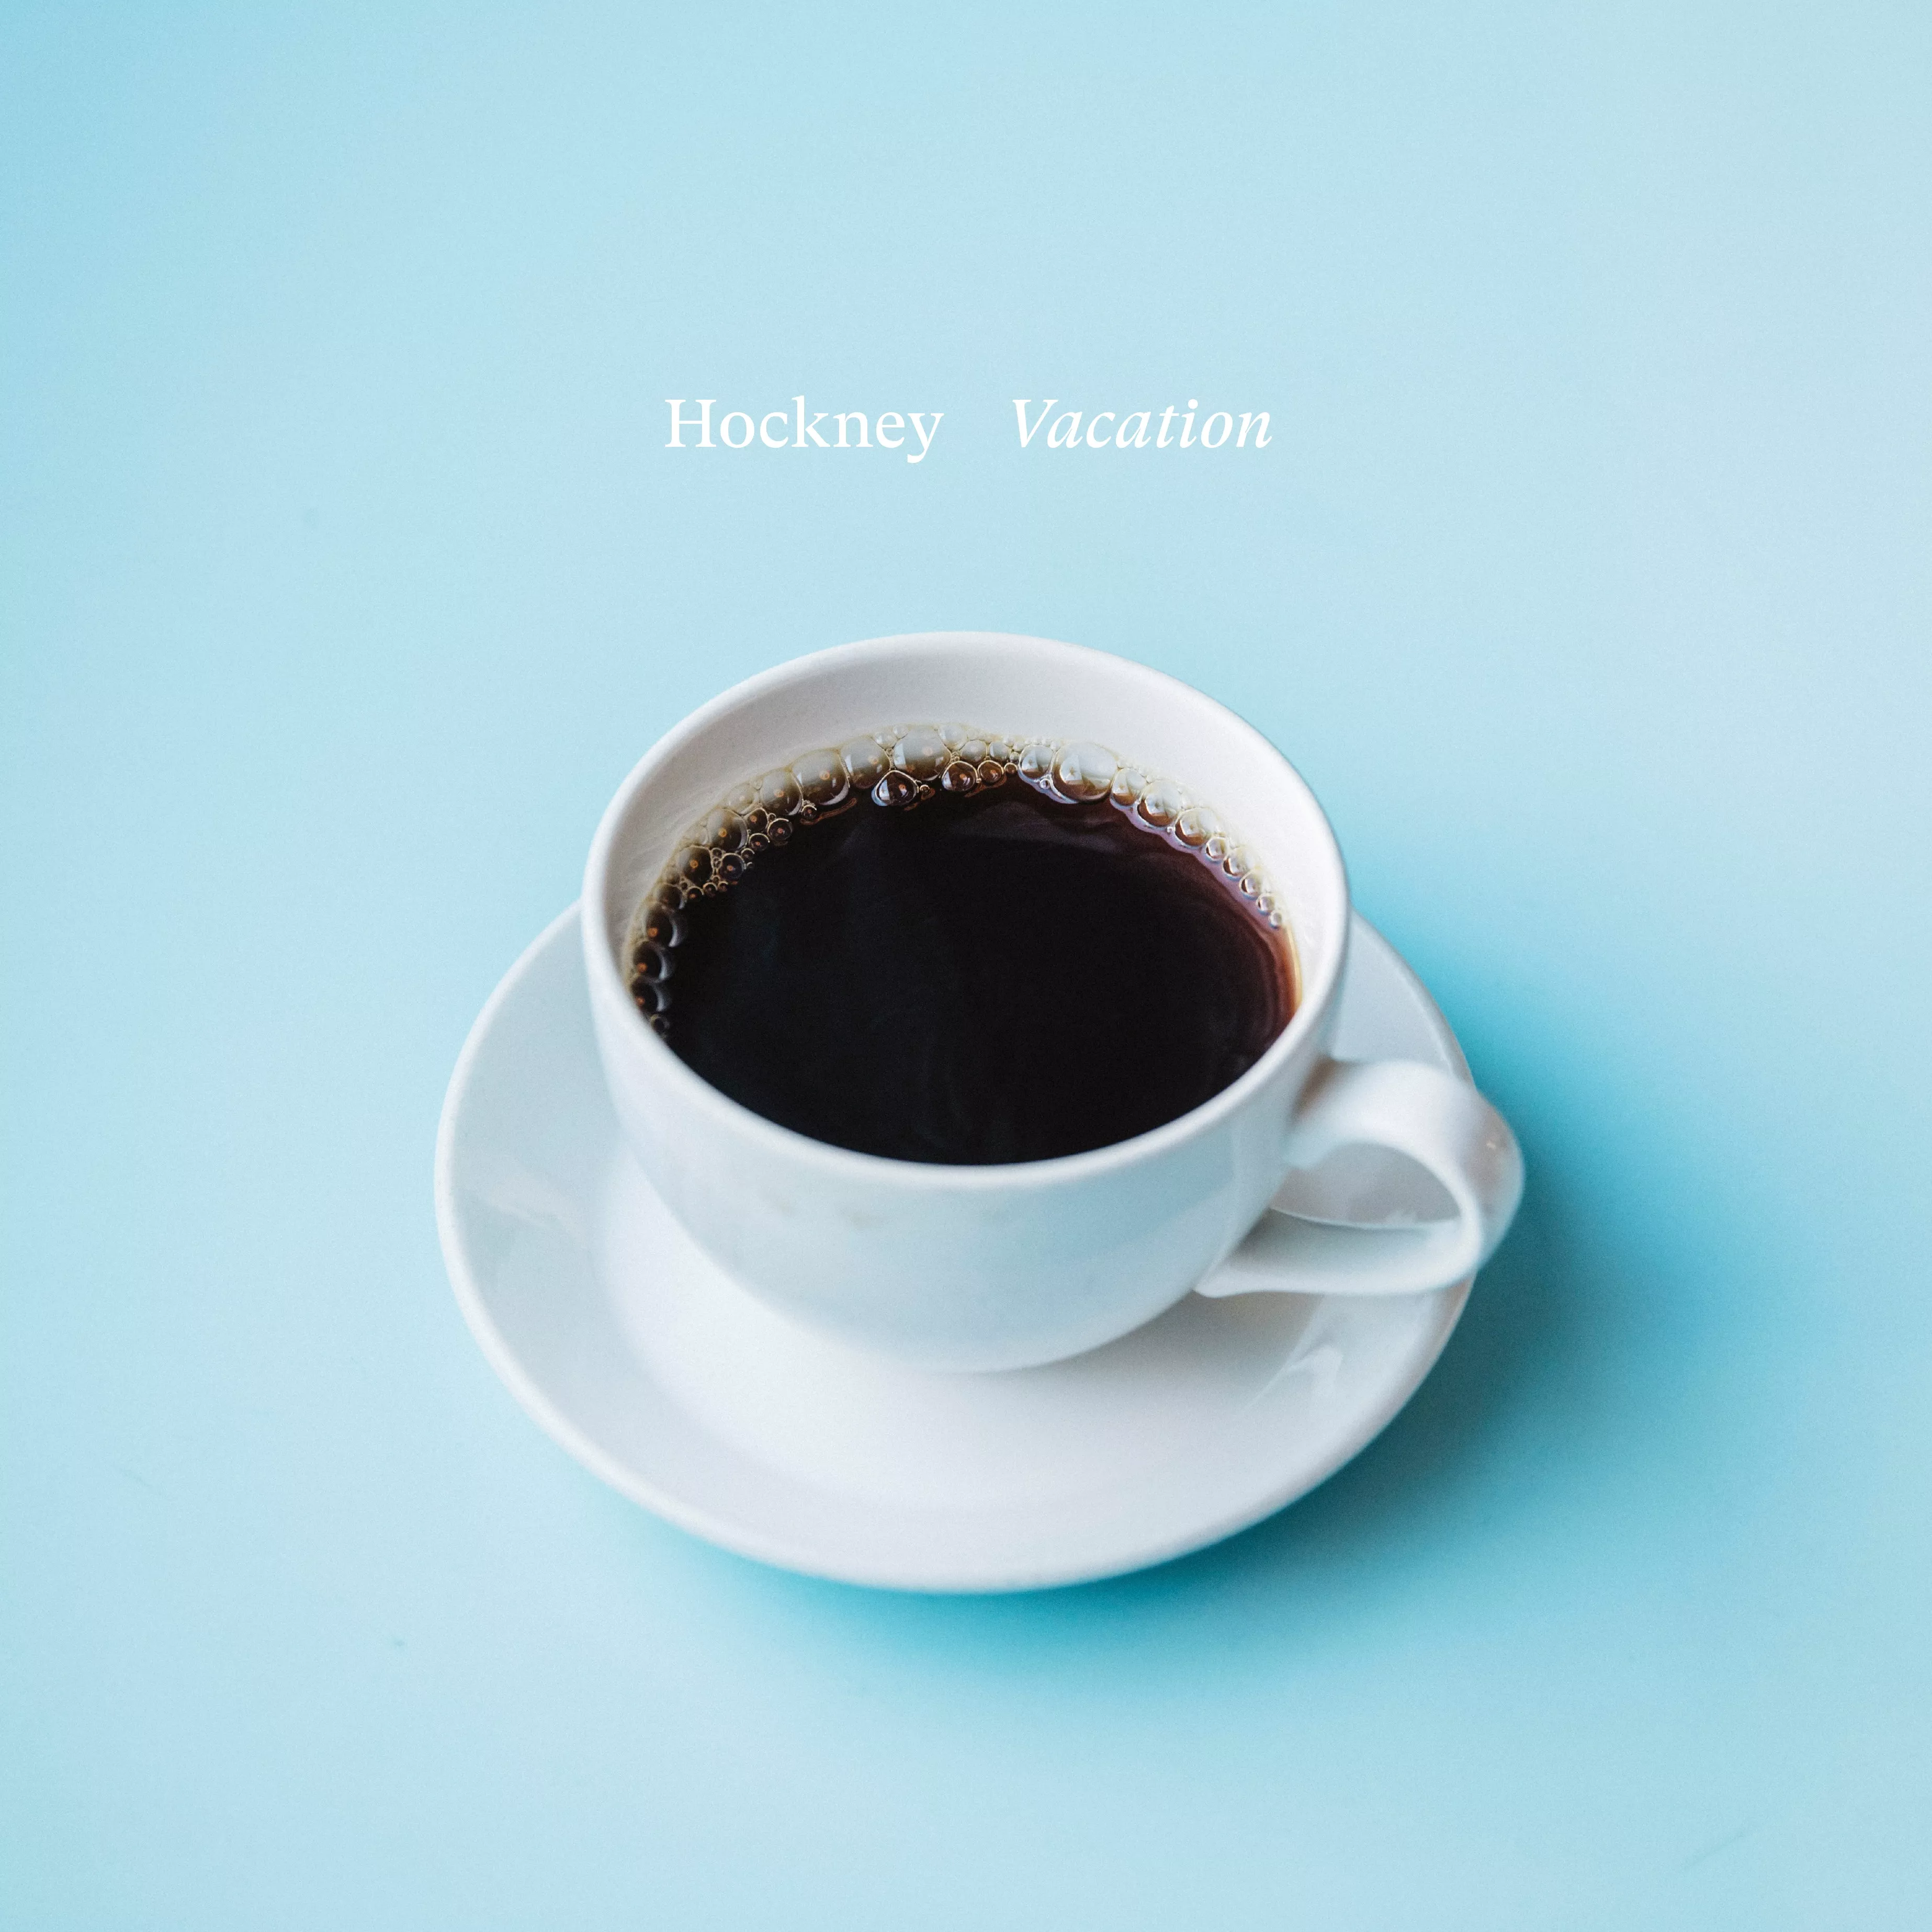 Vacation - Hockney